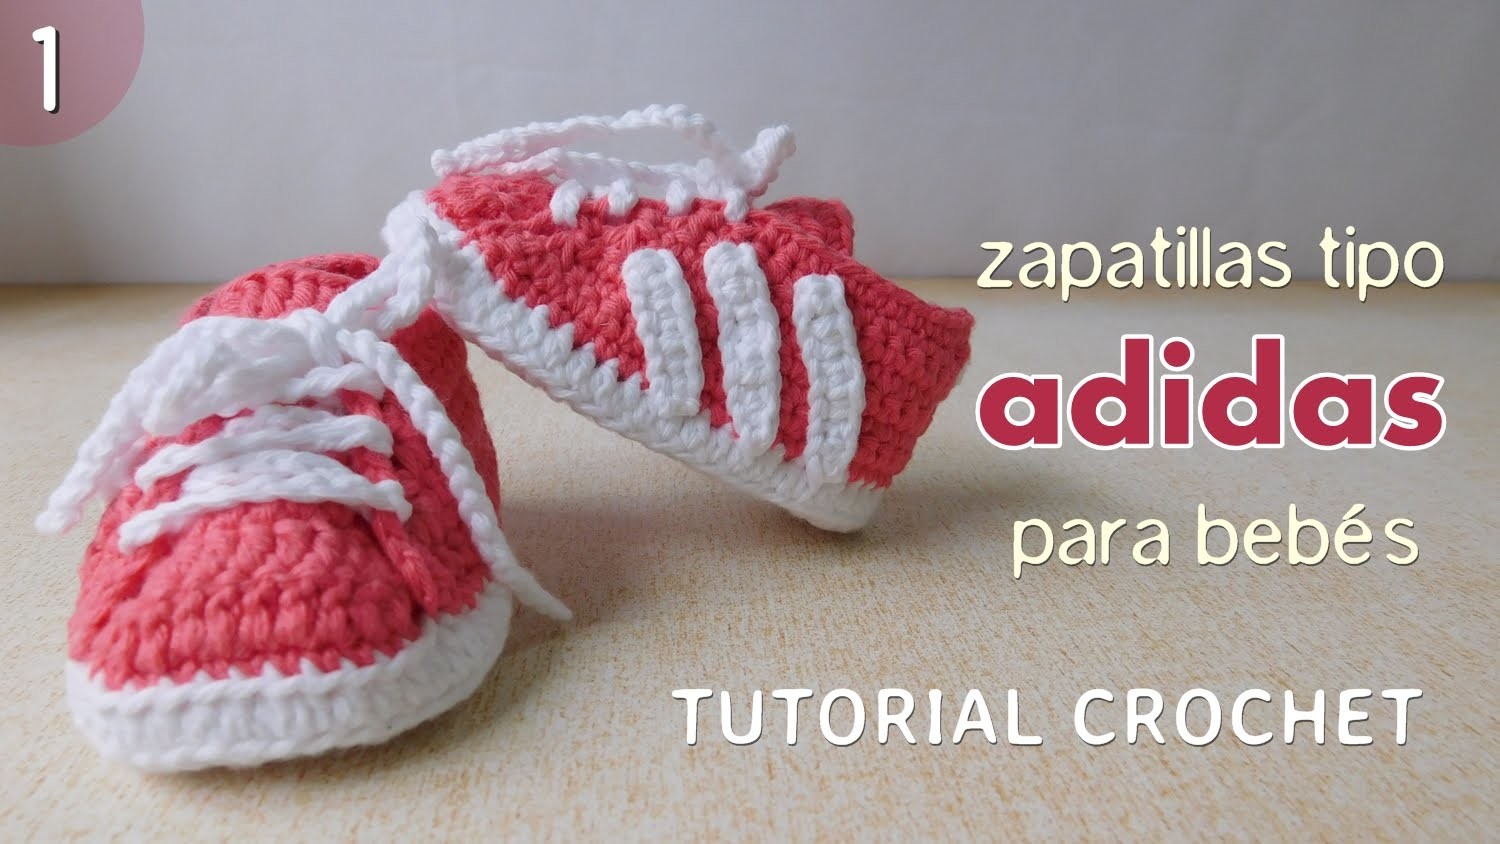 Zapatillas Adidas a crochet para bebé (Parte 1 de 2)